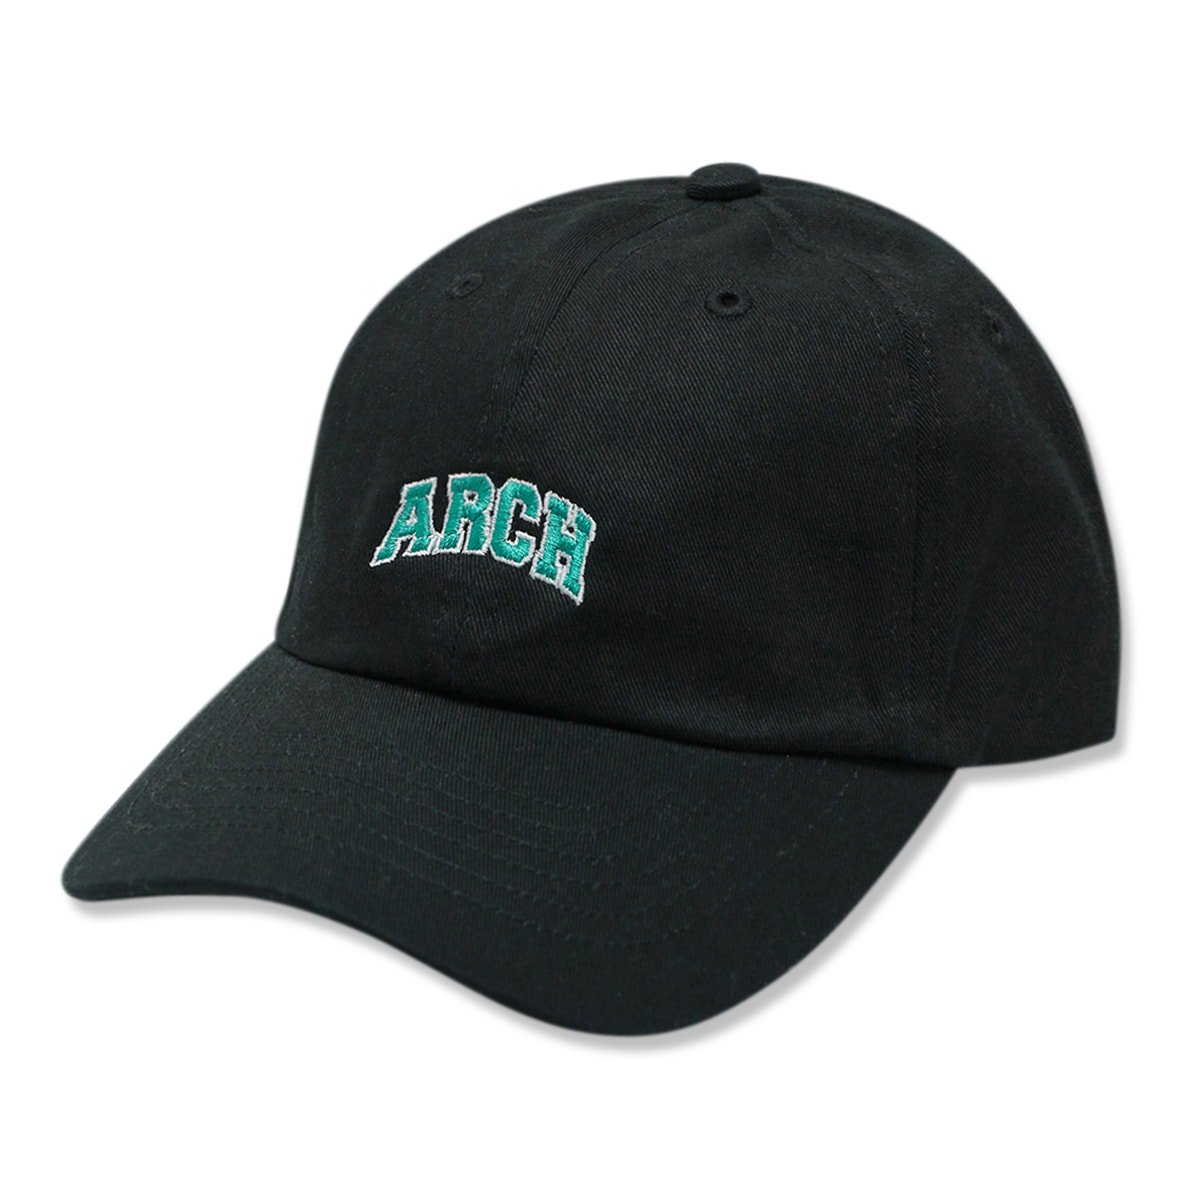 college logo cap【black】